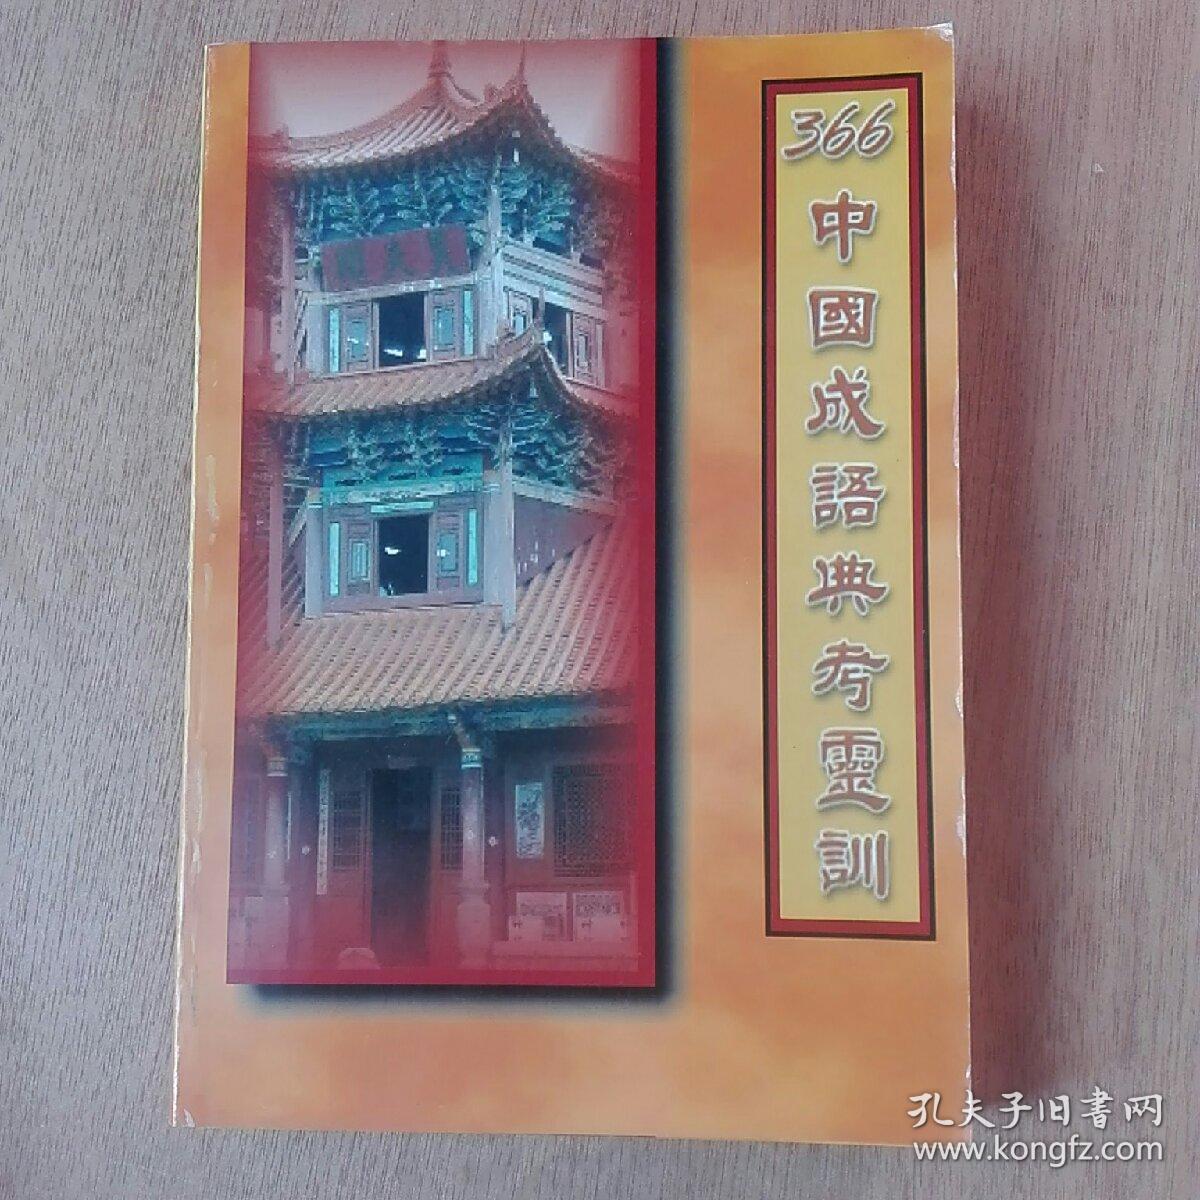 366中国成语典考灵训。